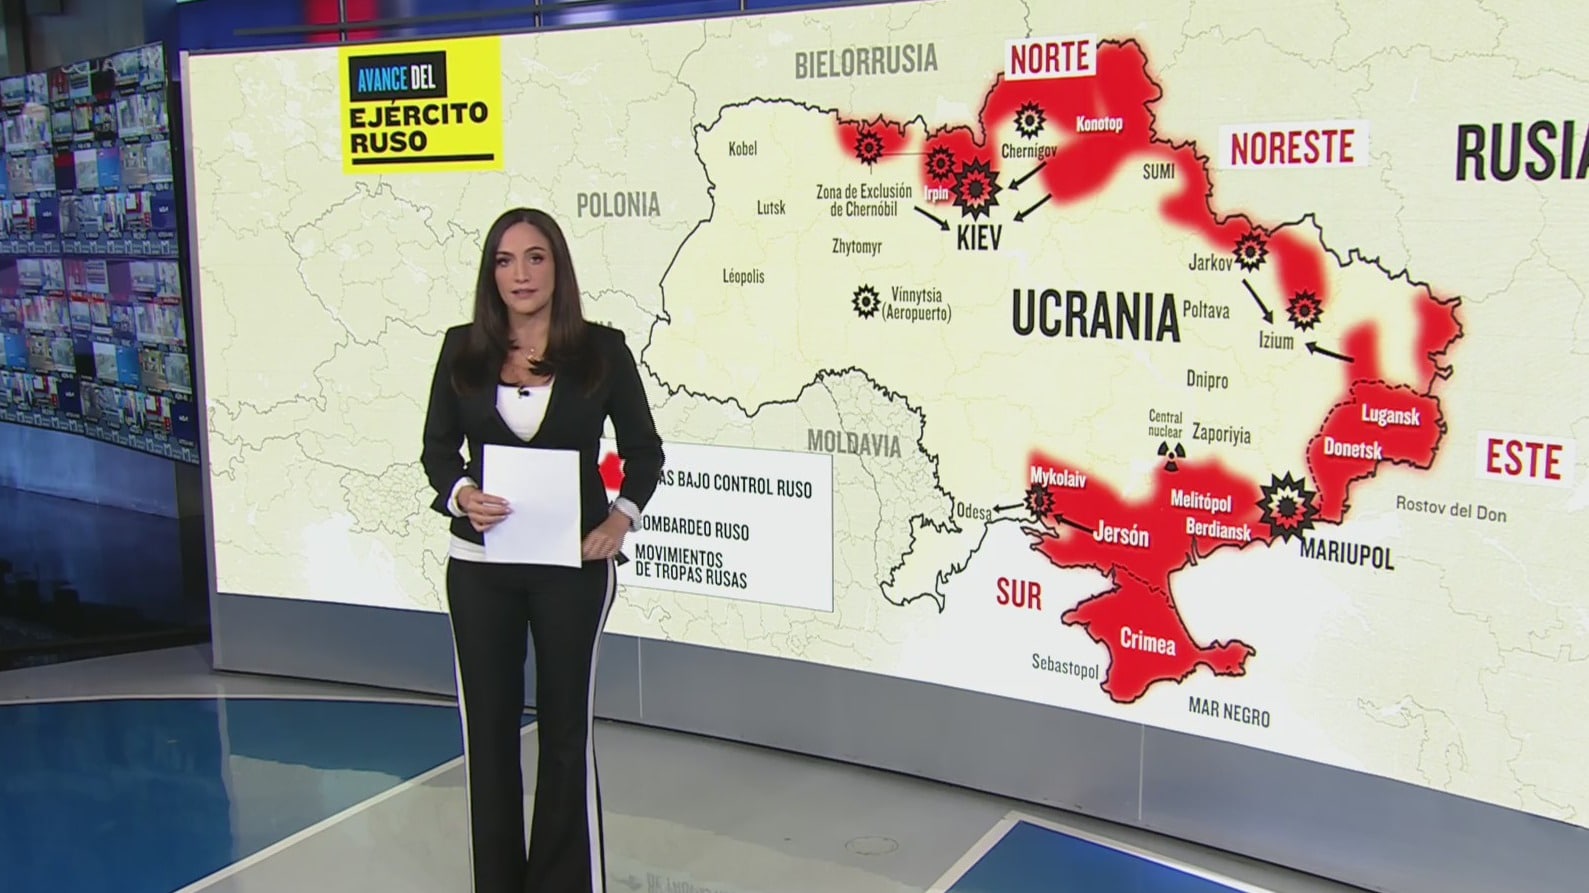 mapa el avance ruso sobre territorio ucraniano